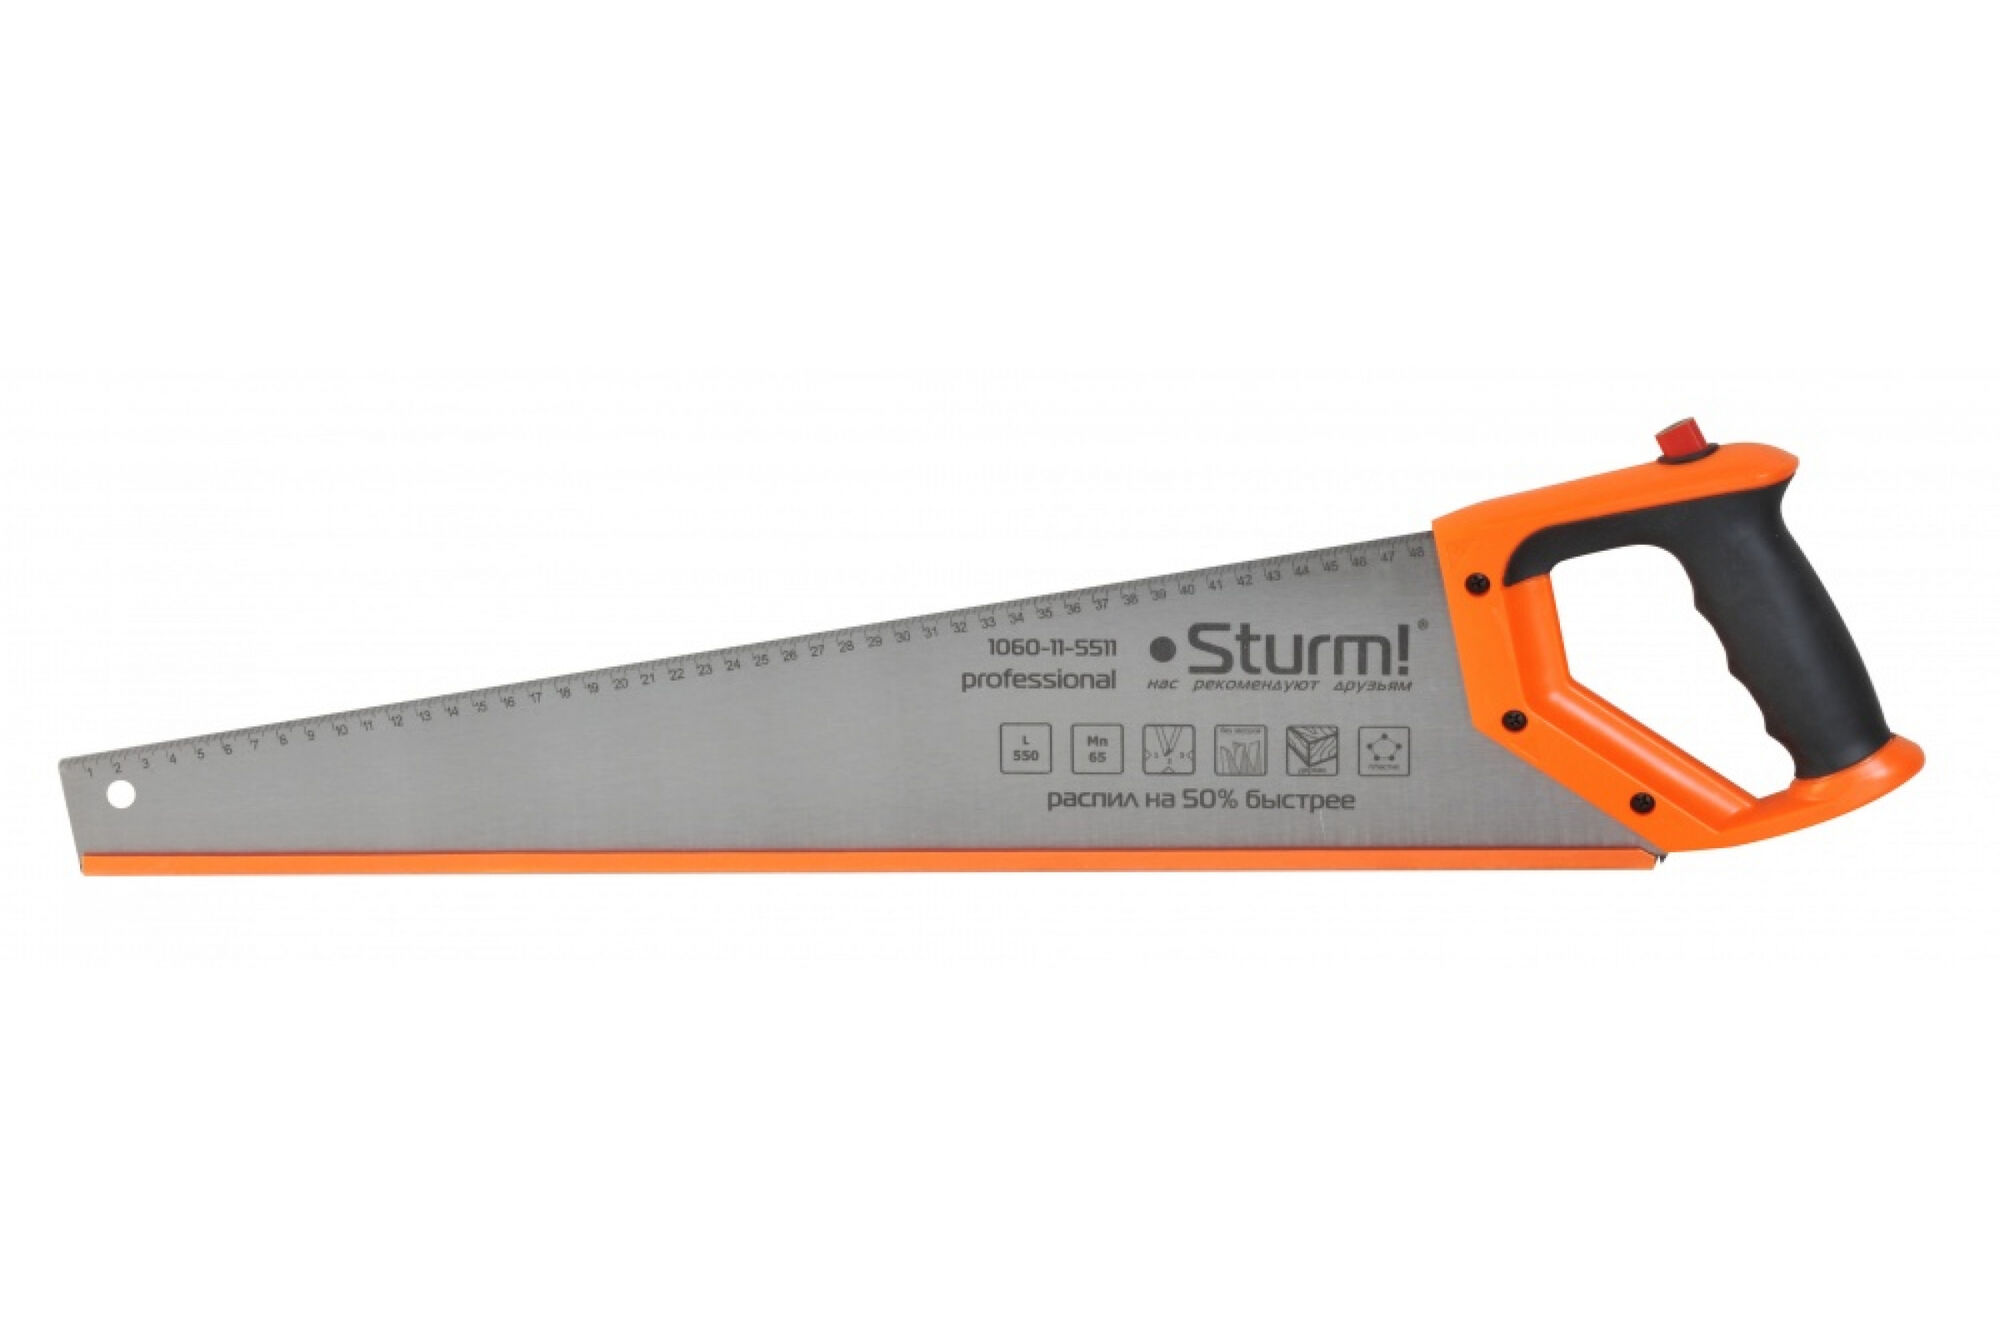 Ножовка по дереву с карандашом Sturm 1060-11-5511